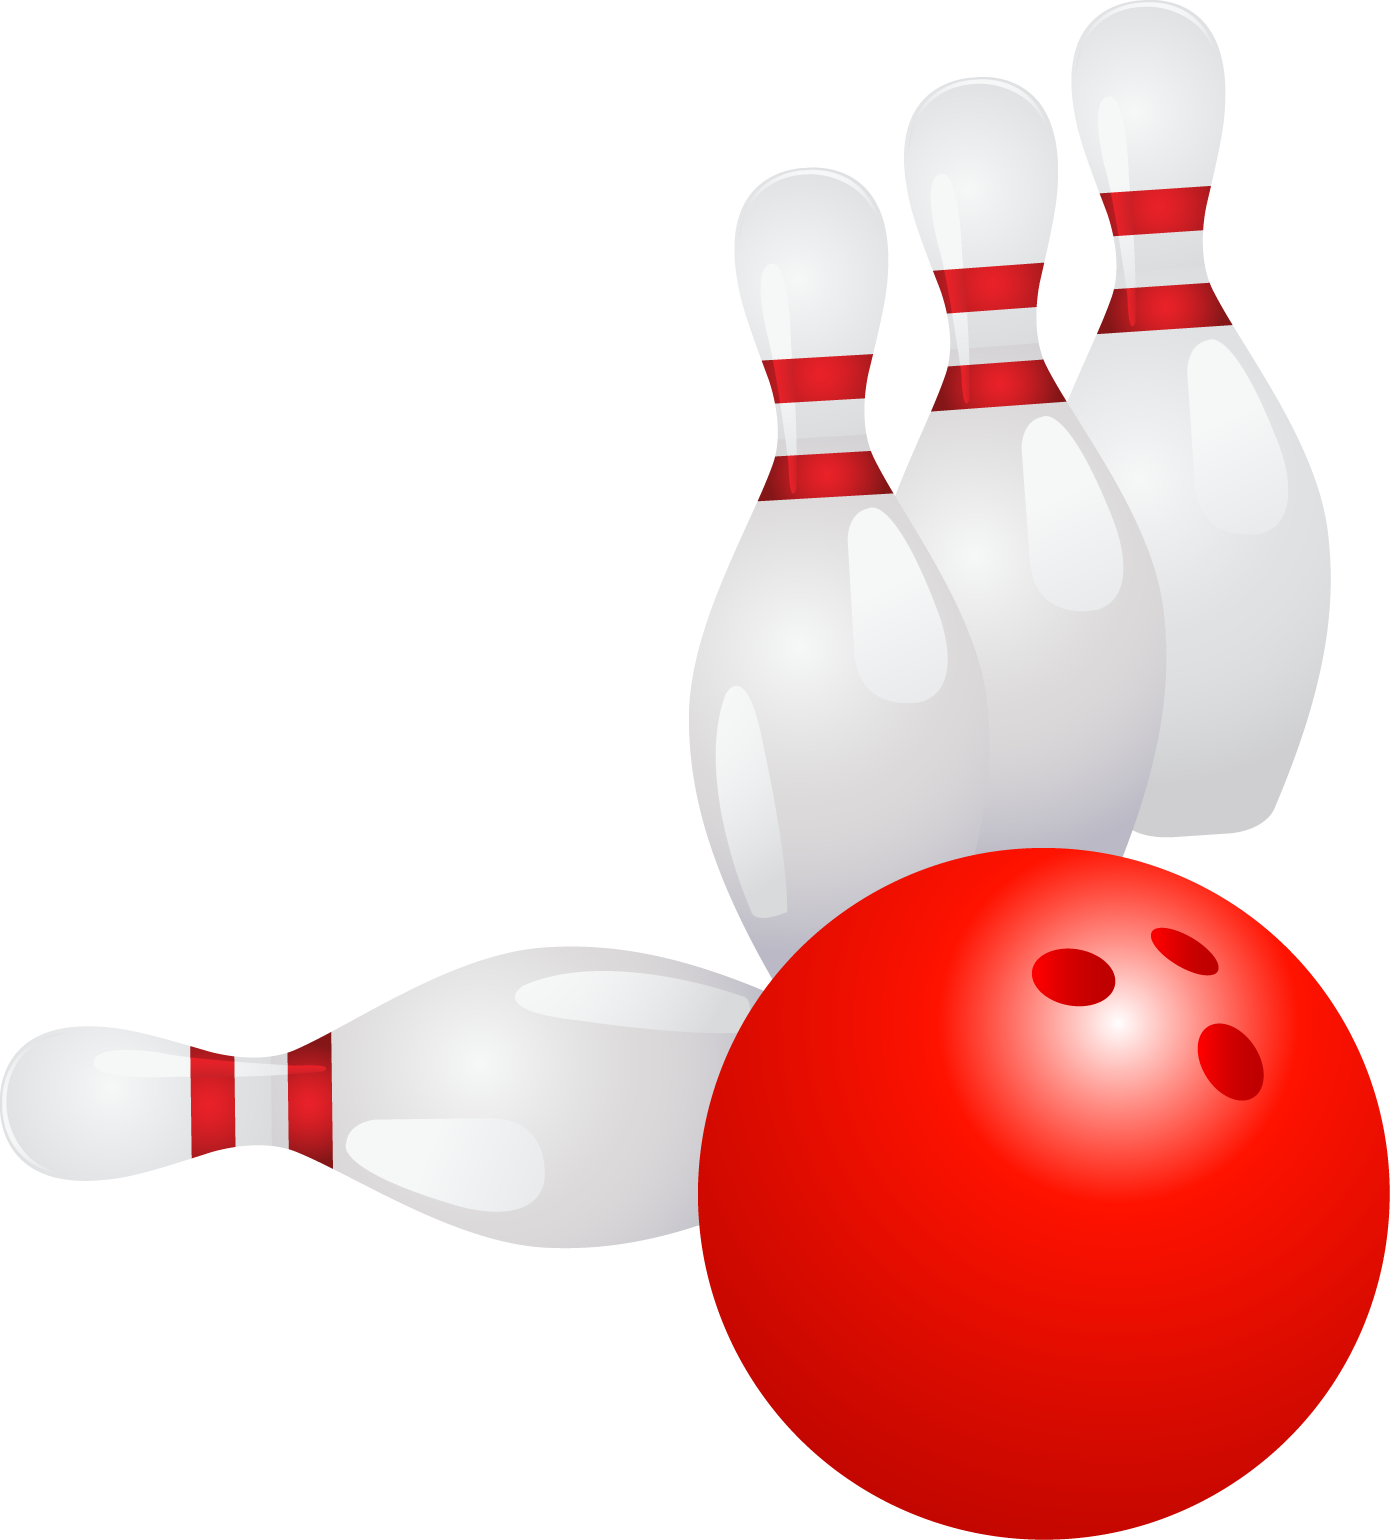 Bowling Ball Ten-pin Bowling Bowling Pin - Bowling Ball Ten-pin Bowling Bowling Pin (1390x1540)